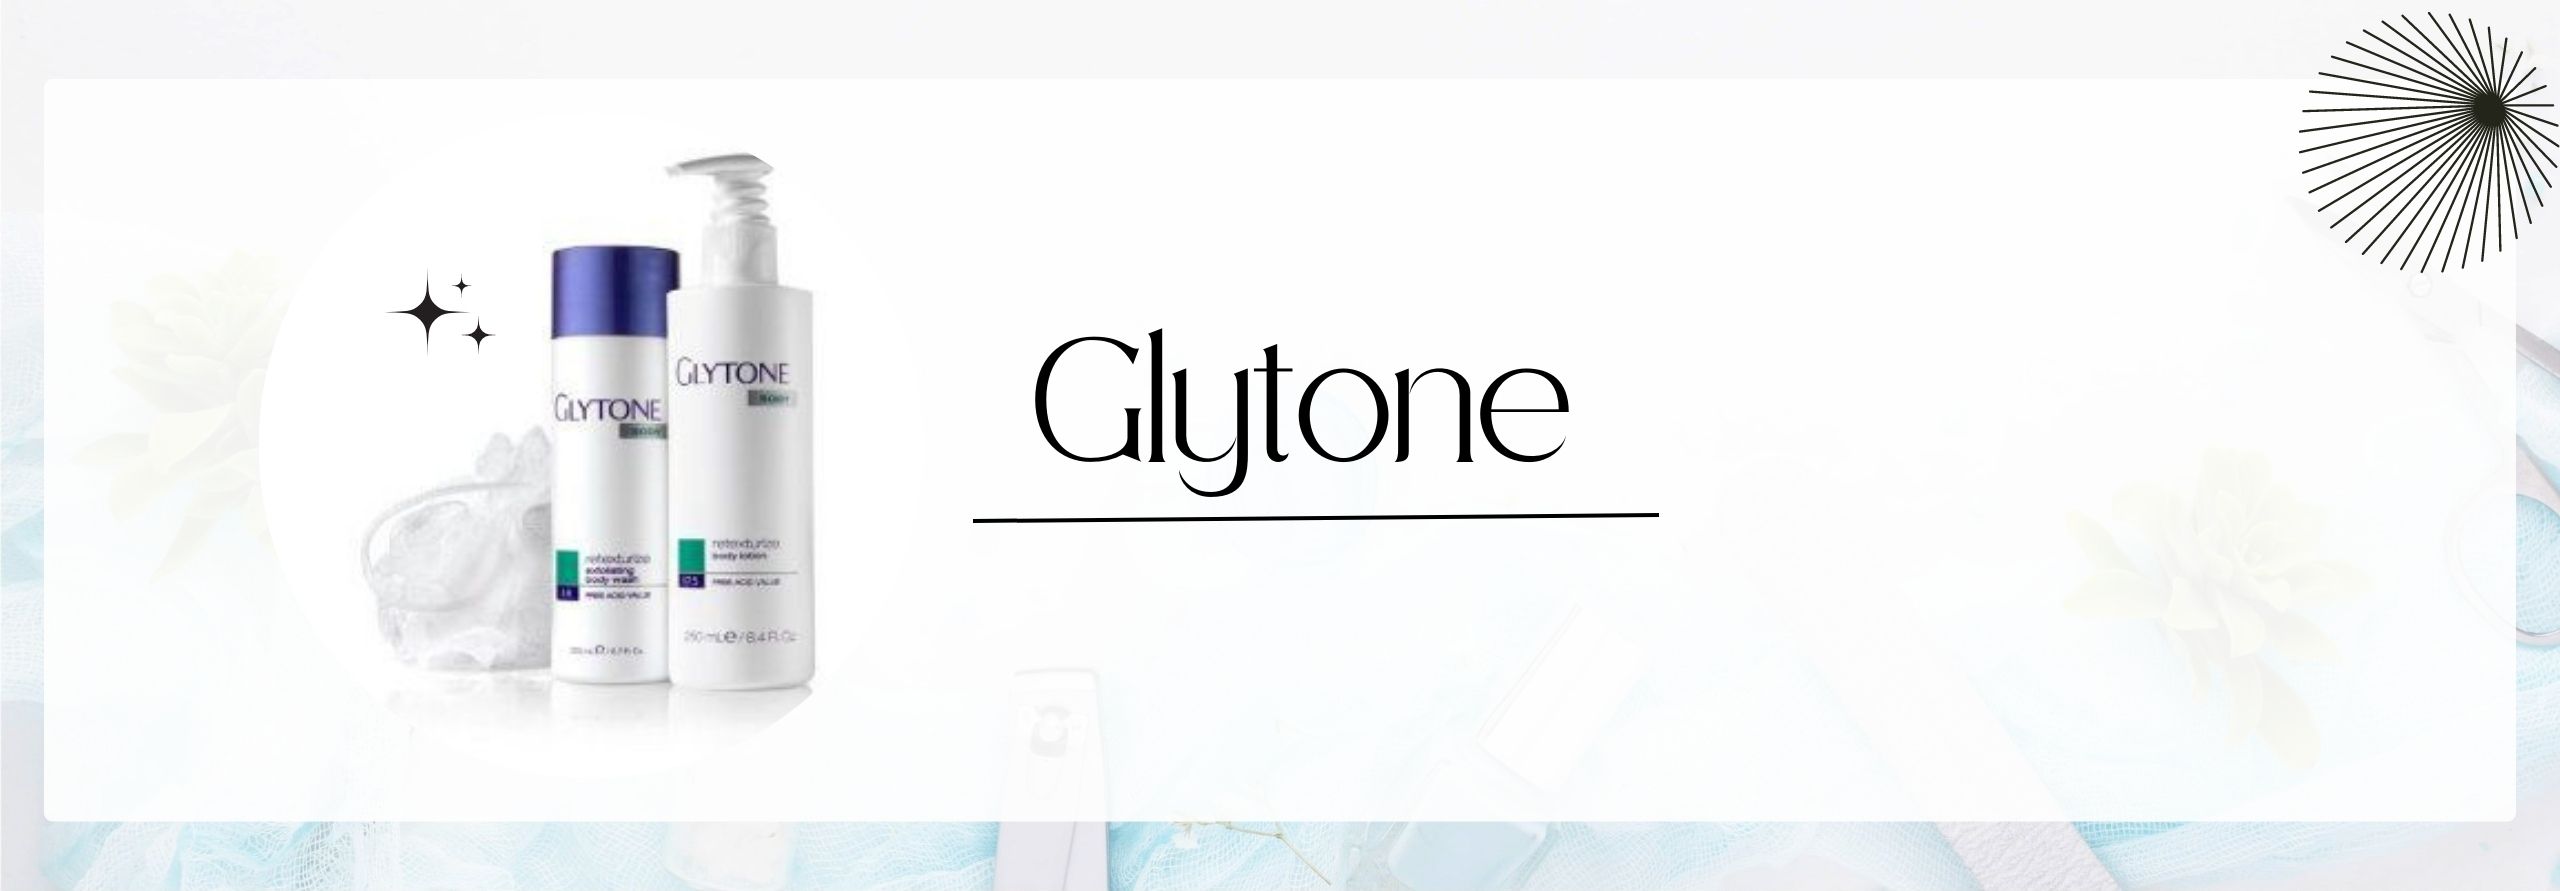 Glyton